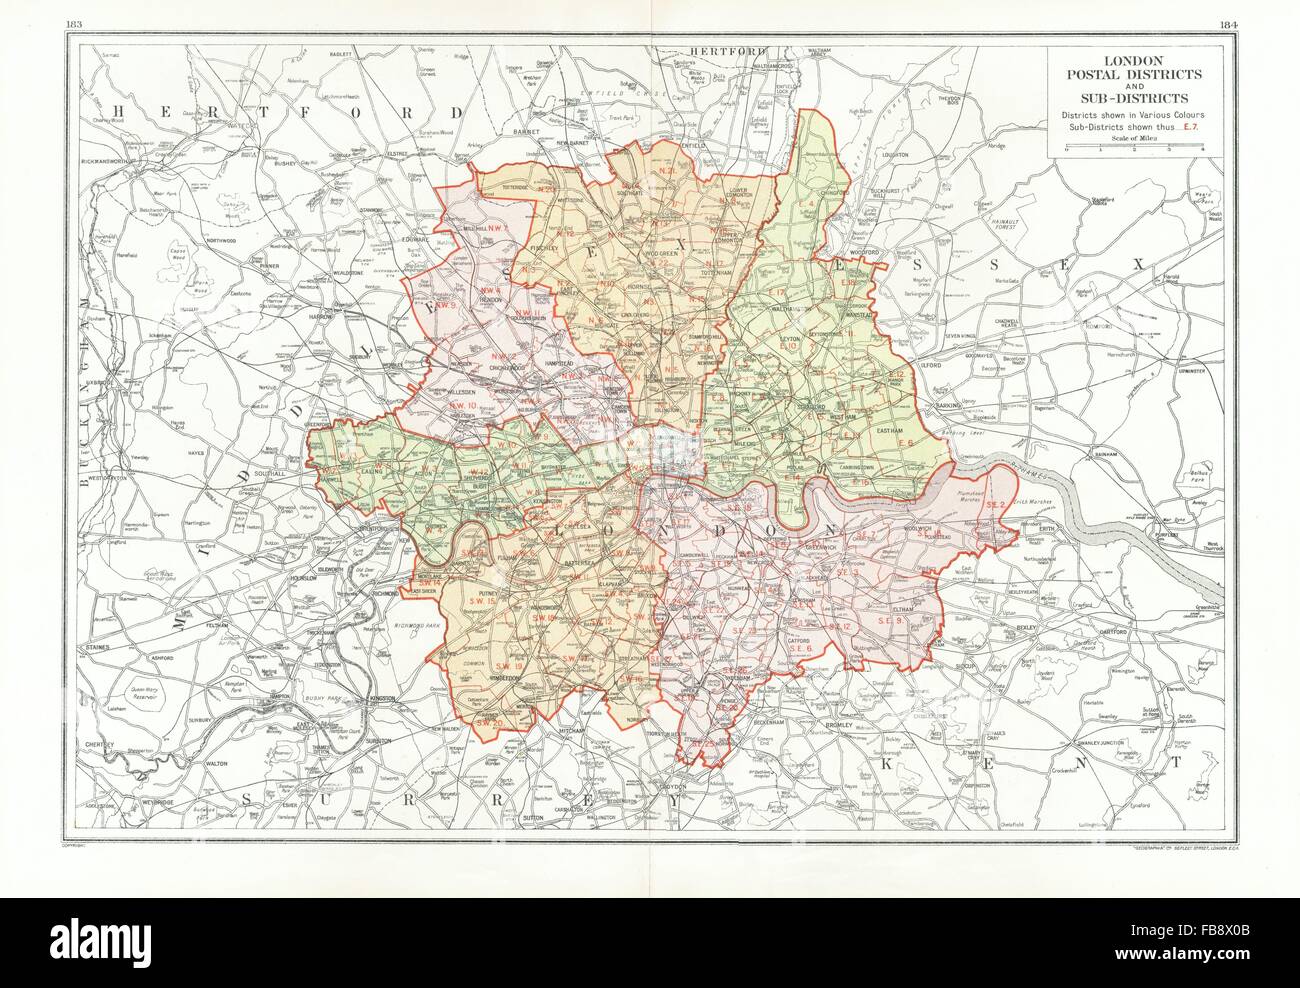 Londres. Les Districts et sous-districts postaux. Codes postaux, carte vintage 1933 Banque D'Images